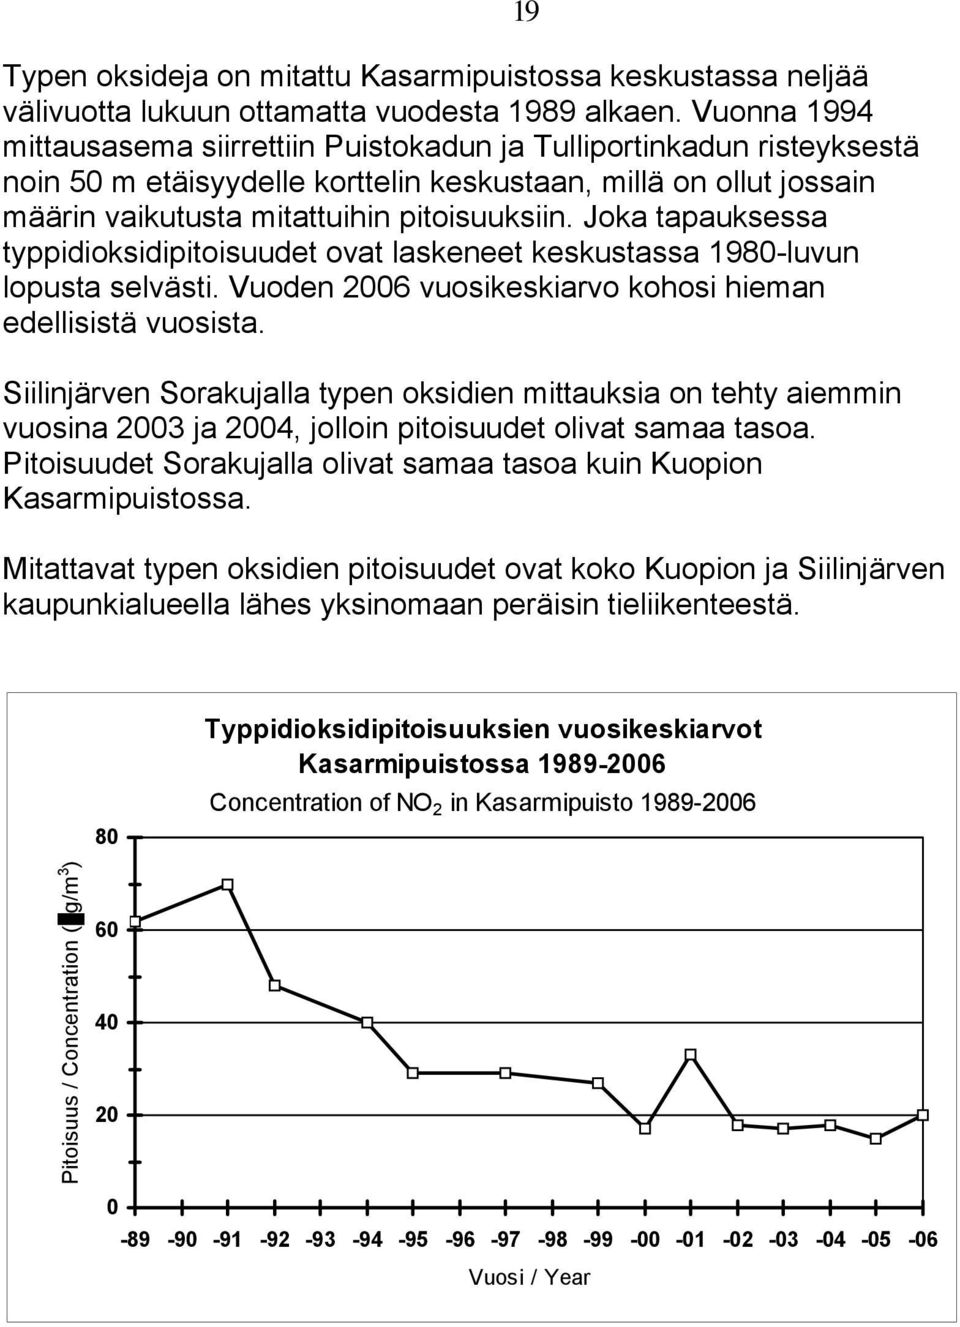 Joka tapauksessa typpidioksidipitoisuudet ovat laskeneet keskustassa 1980-luvun lopusta selvästi. Vuoden 2006 vuosikeskiarvo kohosi hieman edellisistä vuosista.